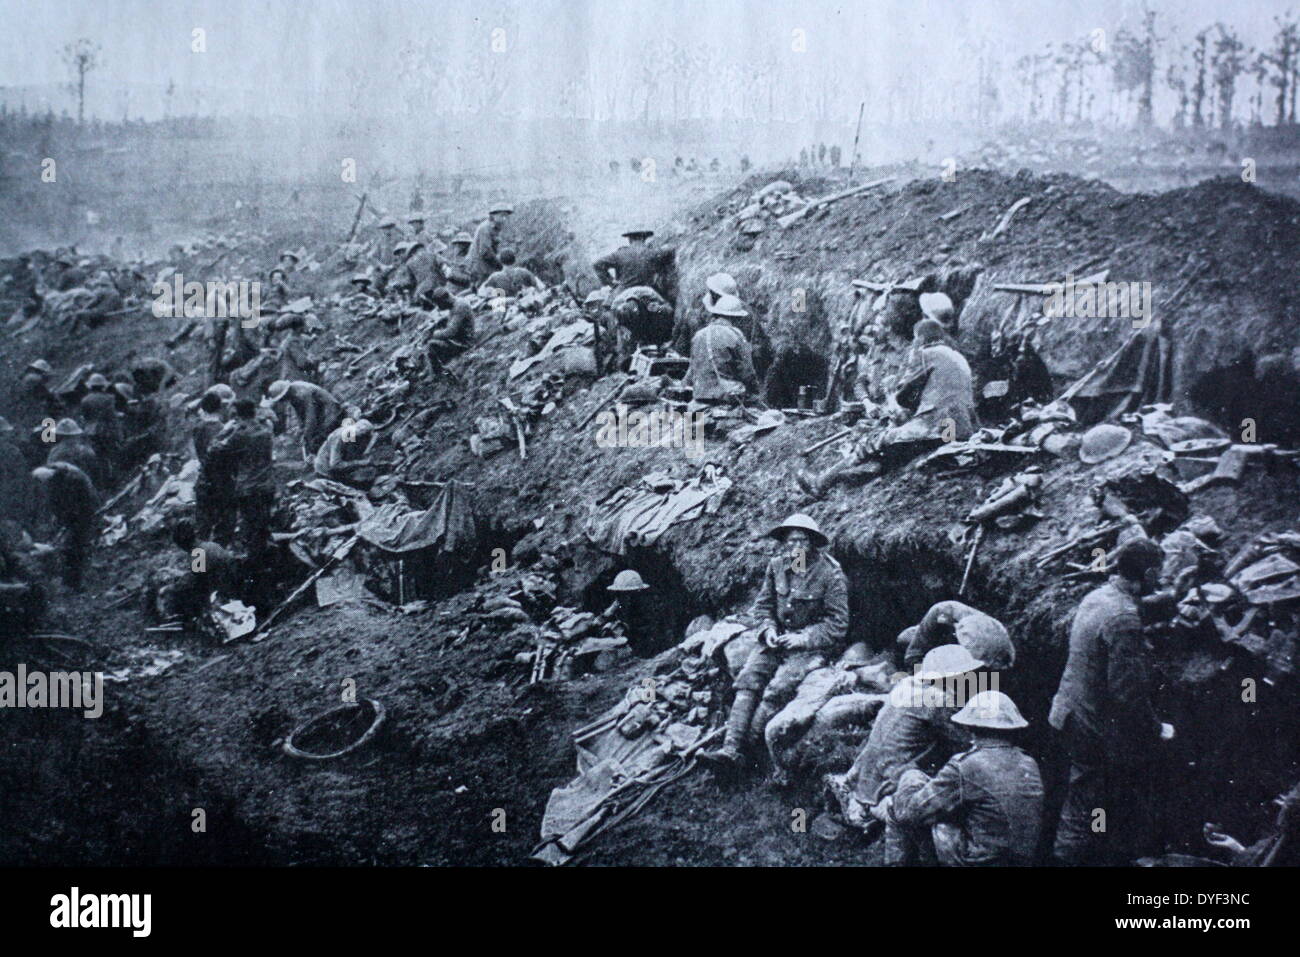 Photographie de les tranchées pendant la Première Guerre mondiale. Montrant les conditions exigus et les soldats vivaient dans dans les tranchées. Circa 1914-1918 Banque D'Images